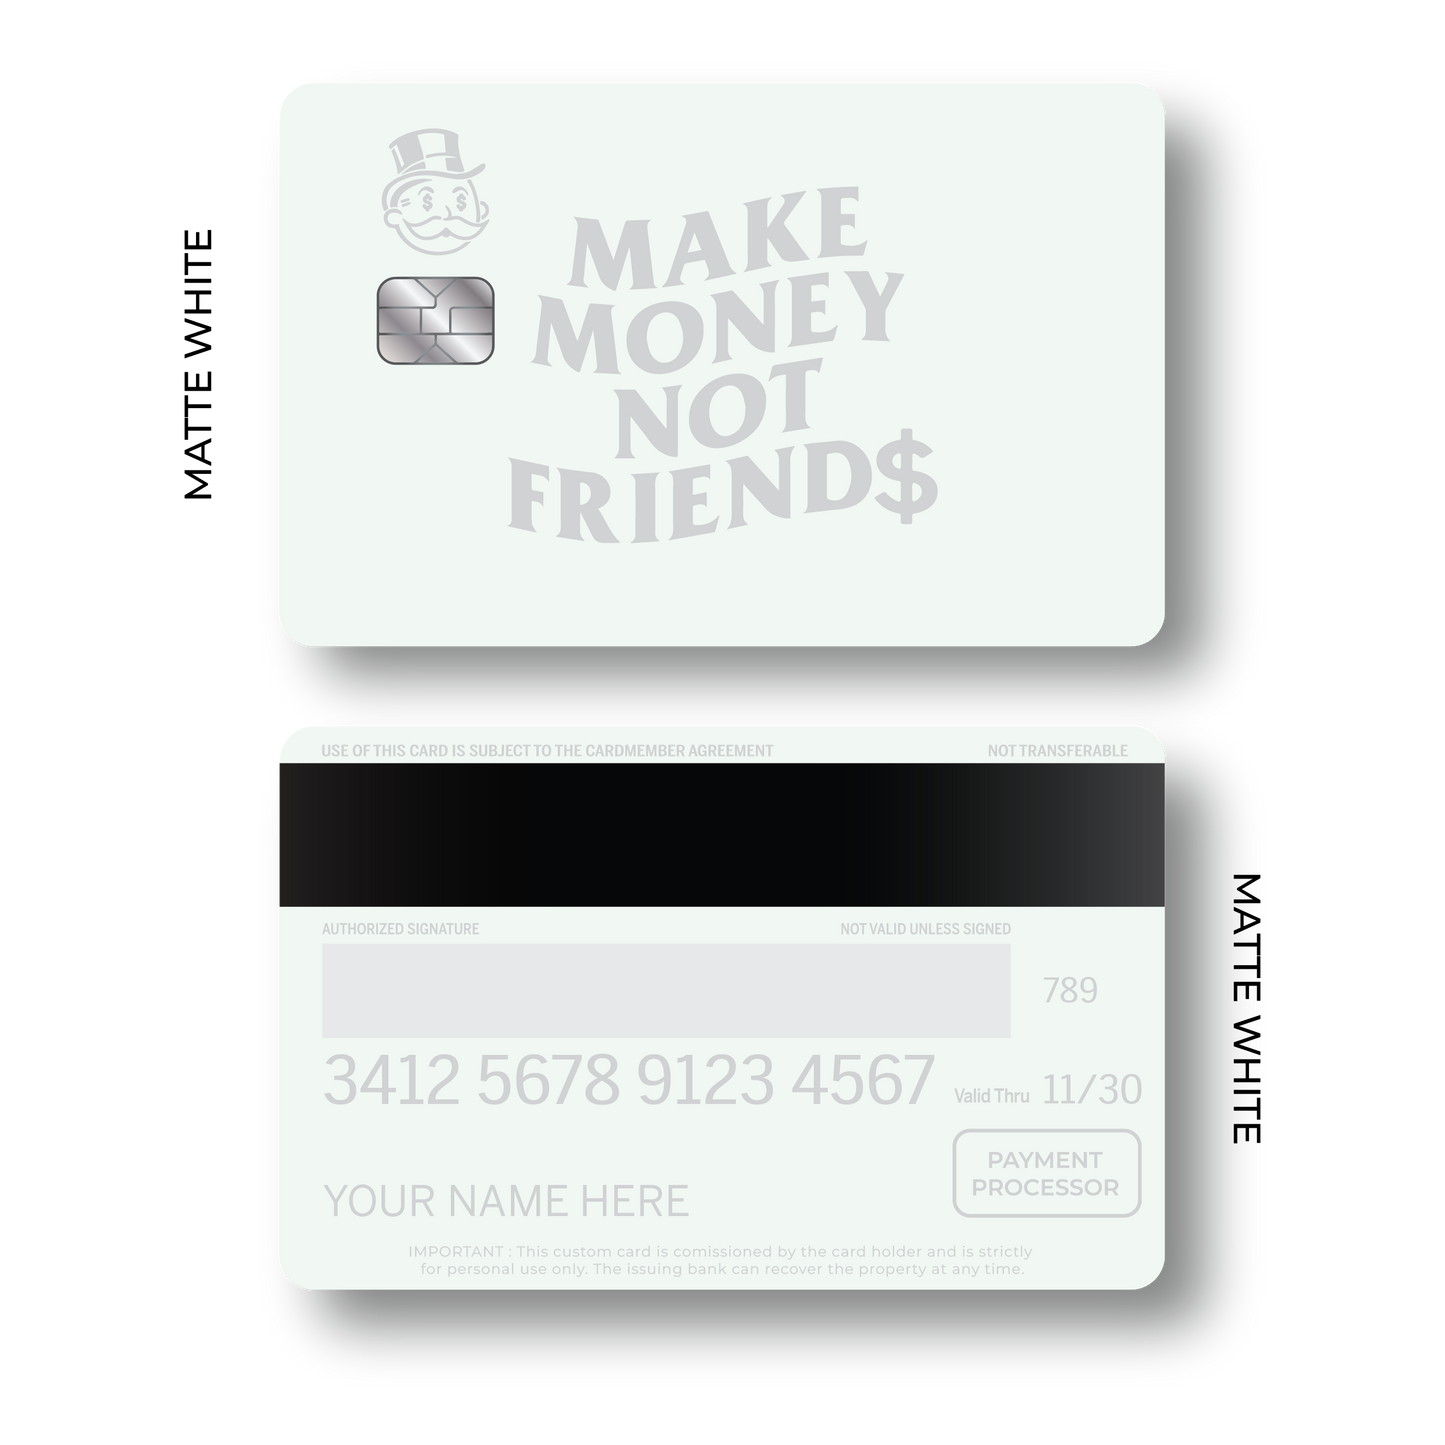 Metal Card Make Money not Friend$